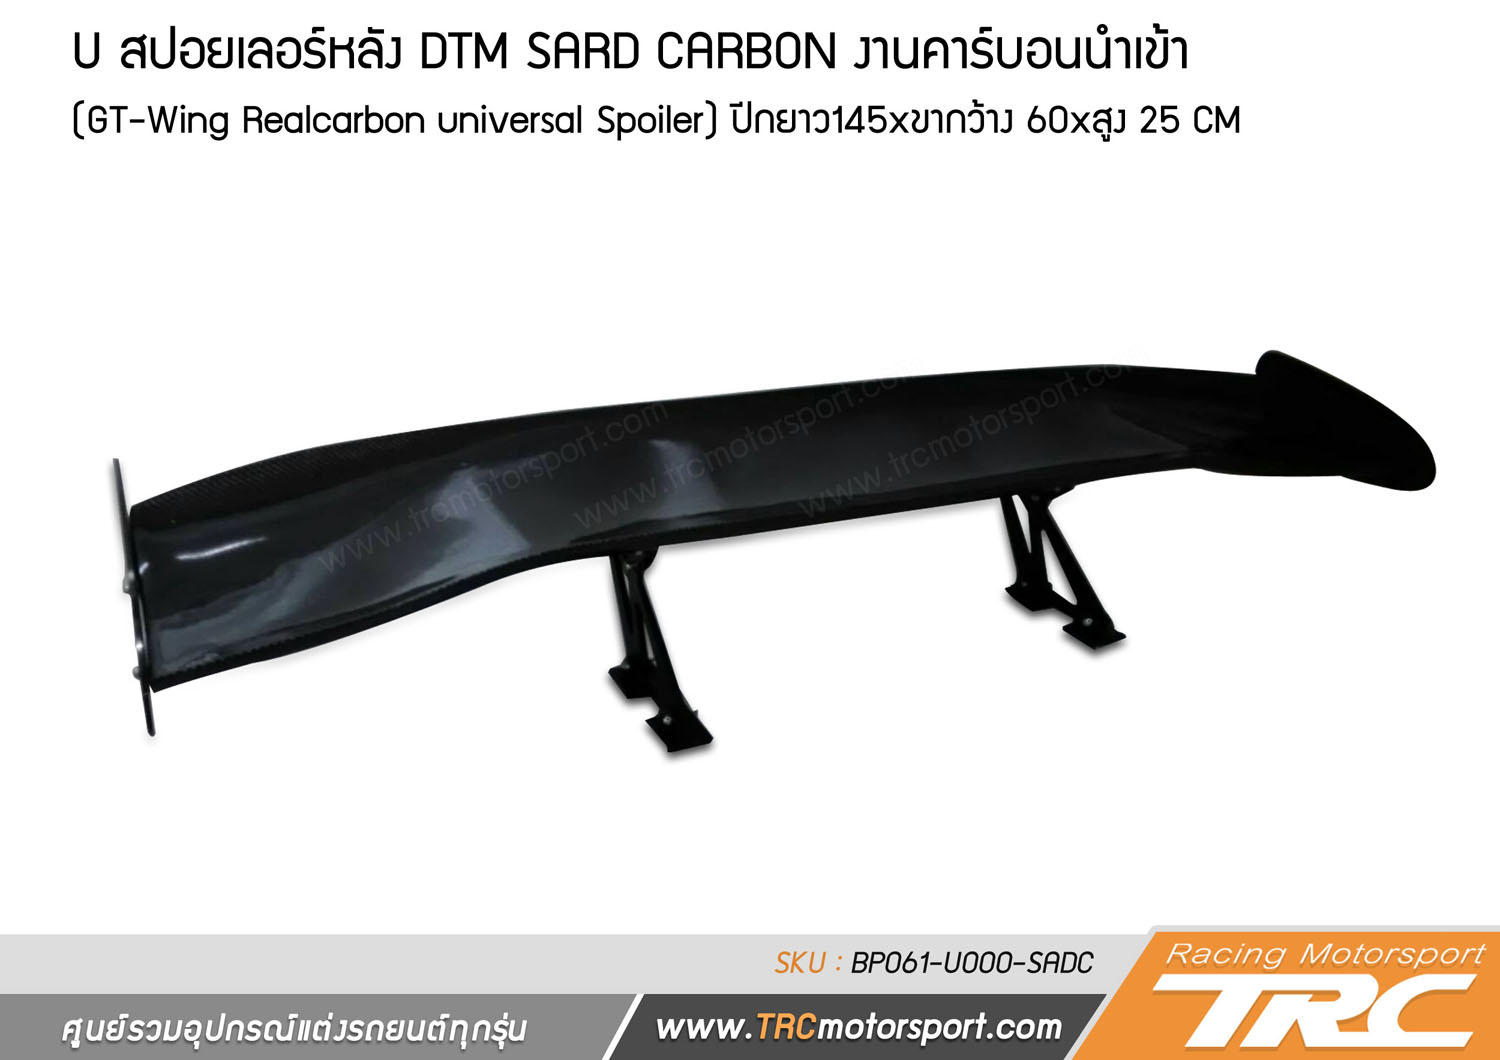 สปอยเลอร์หลัง DTM SARD CARBON งานคาร์บอนนำเข้า (GT-Wing Realcarbon universal Spoiler)